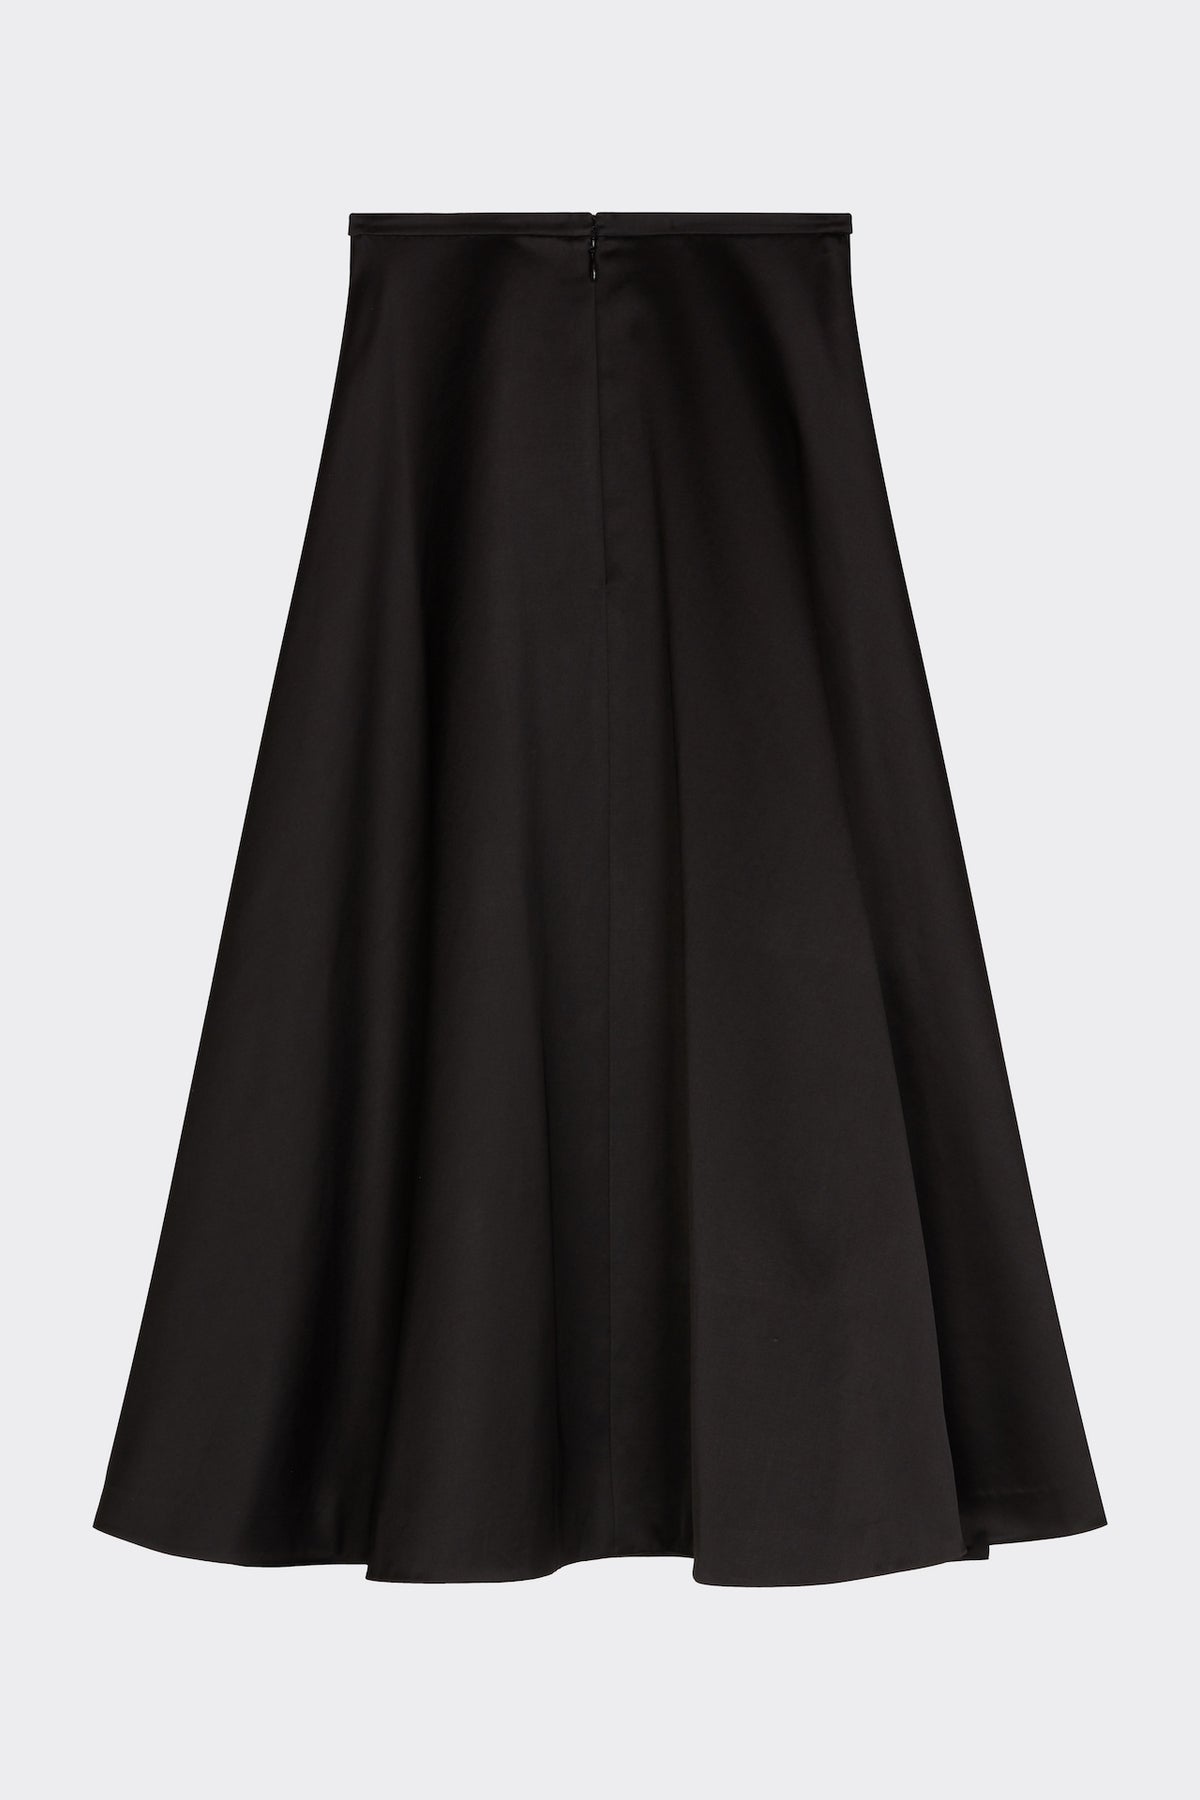 Hetty Skirt in Black| Noon by Noor